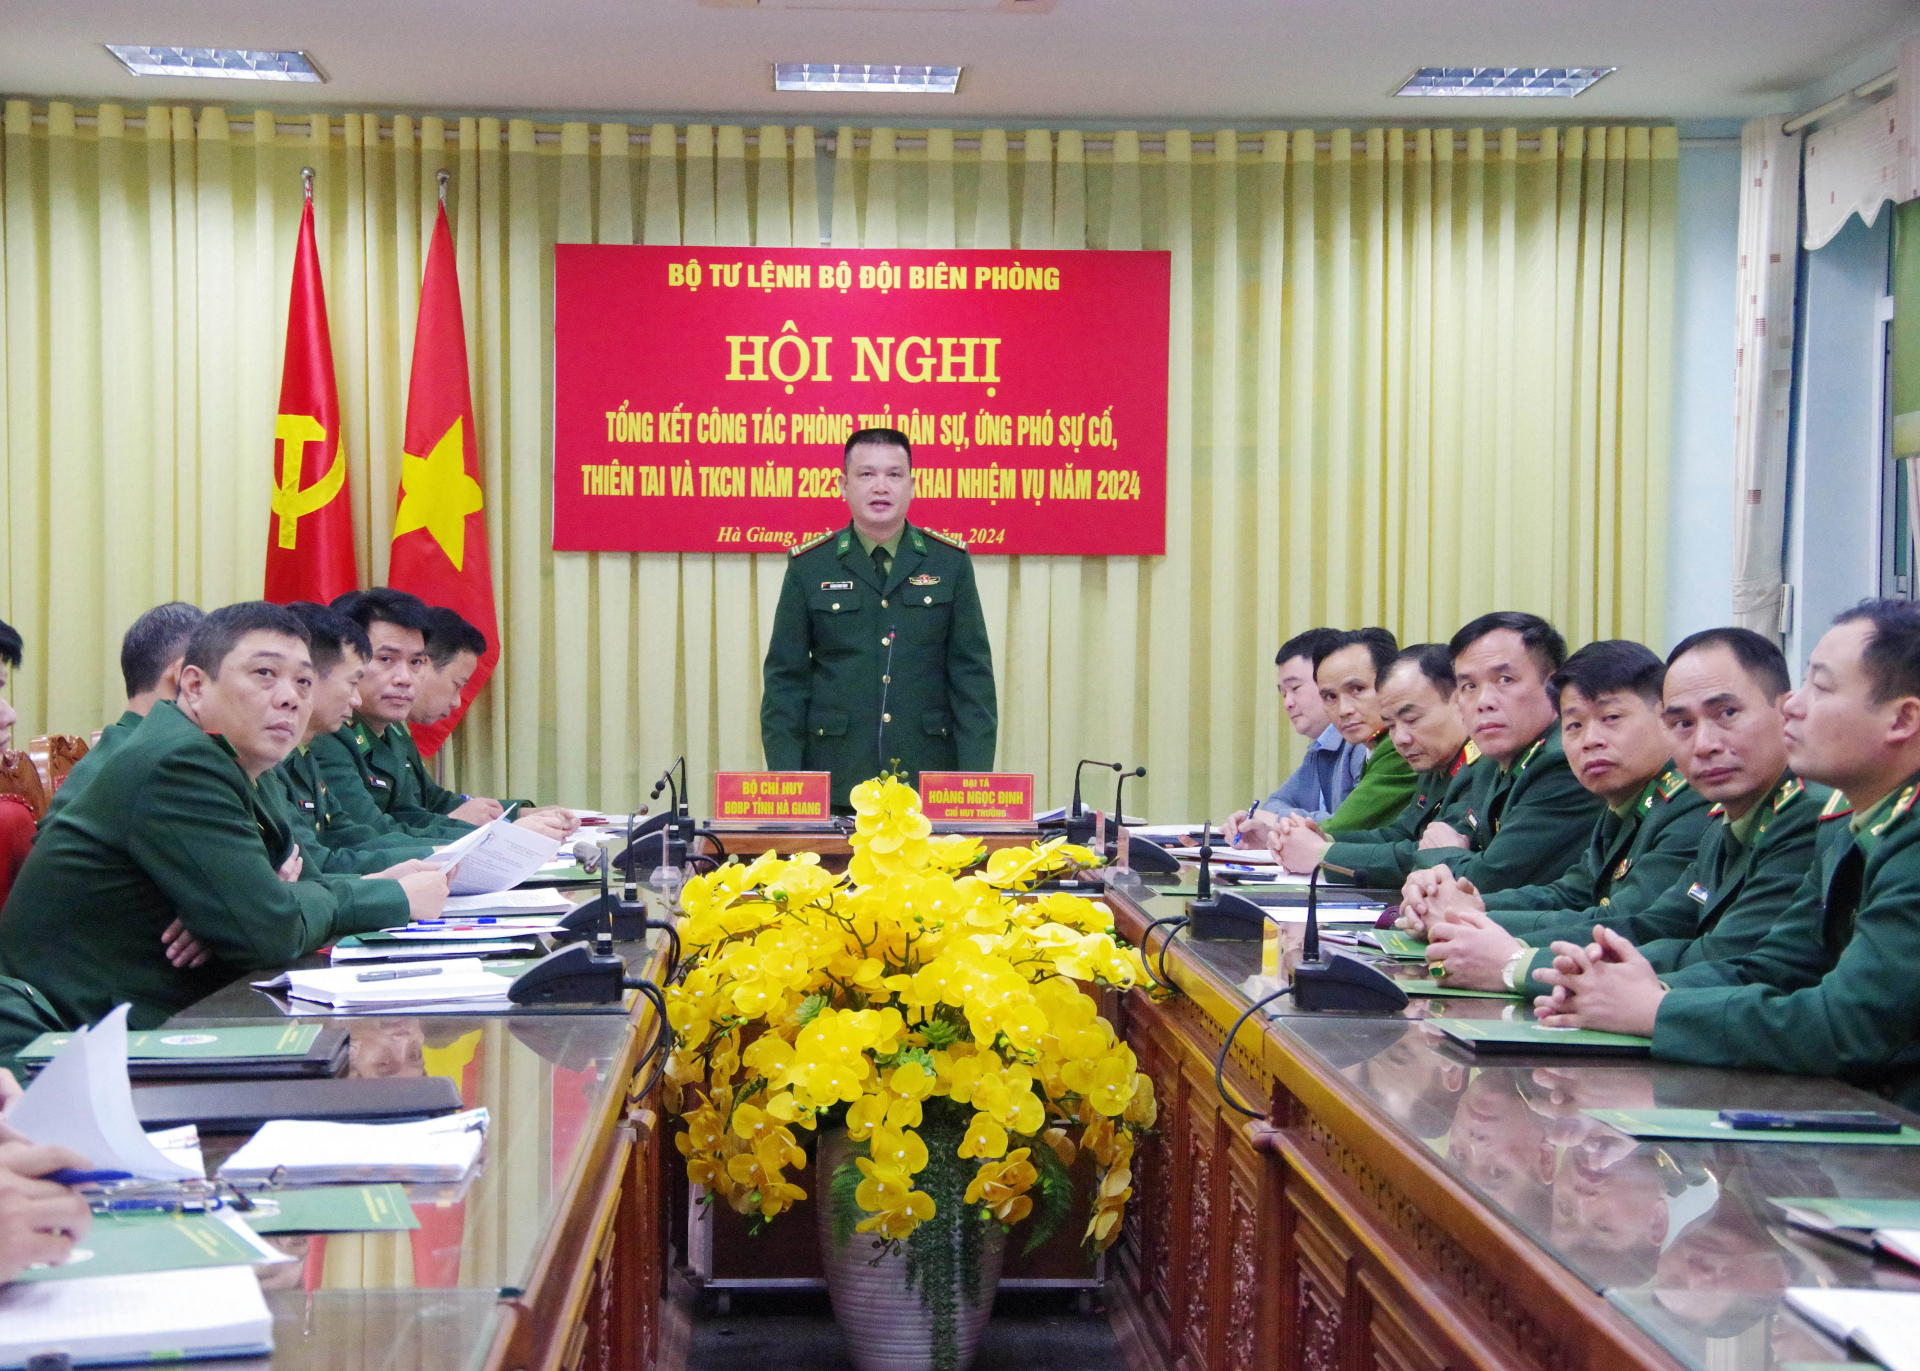 Đại tá Hoàng Ngọc Định, Chỉ huy trưởng Bộ Chỉ huy BĐBP tỉnh phát biểu tham luận tại điểm cầu Hà Giang